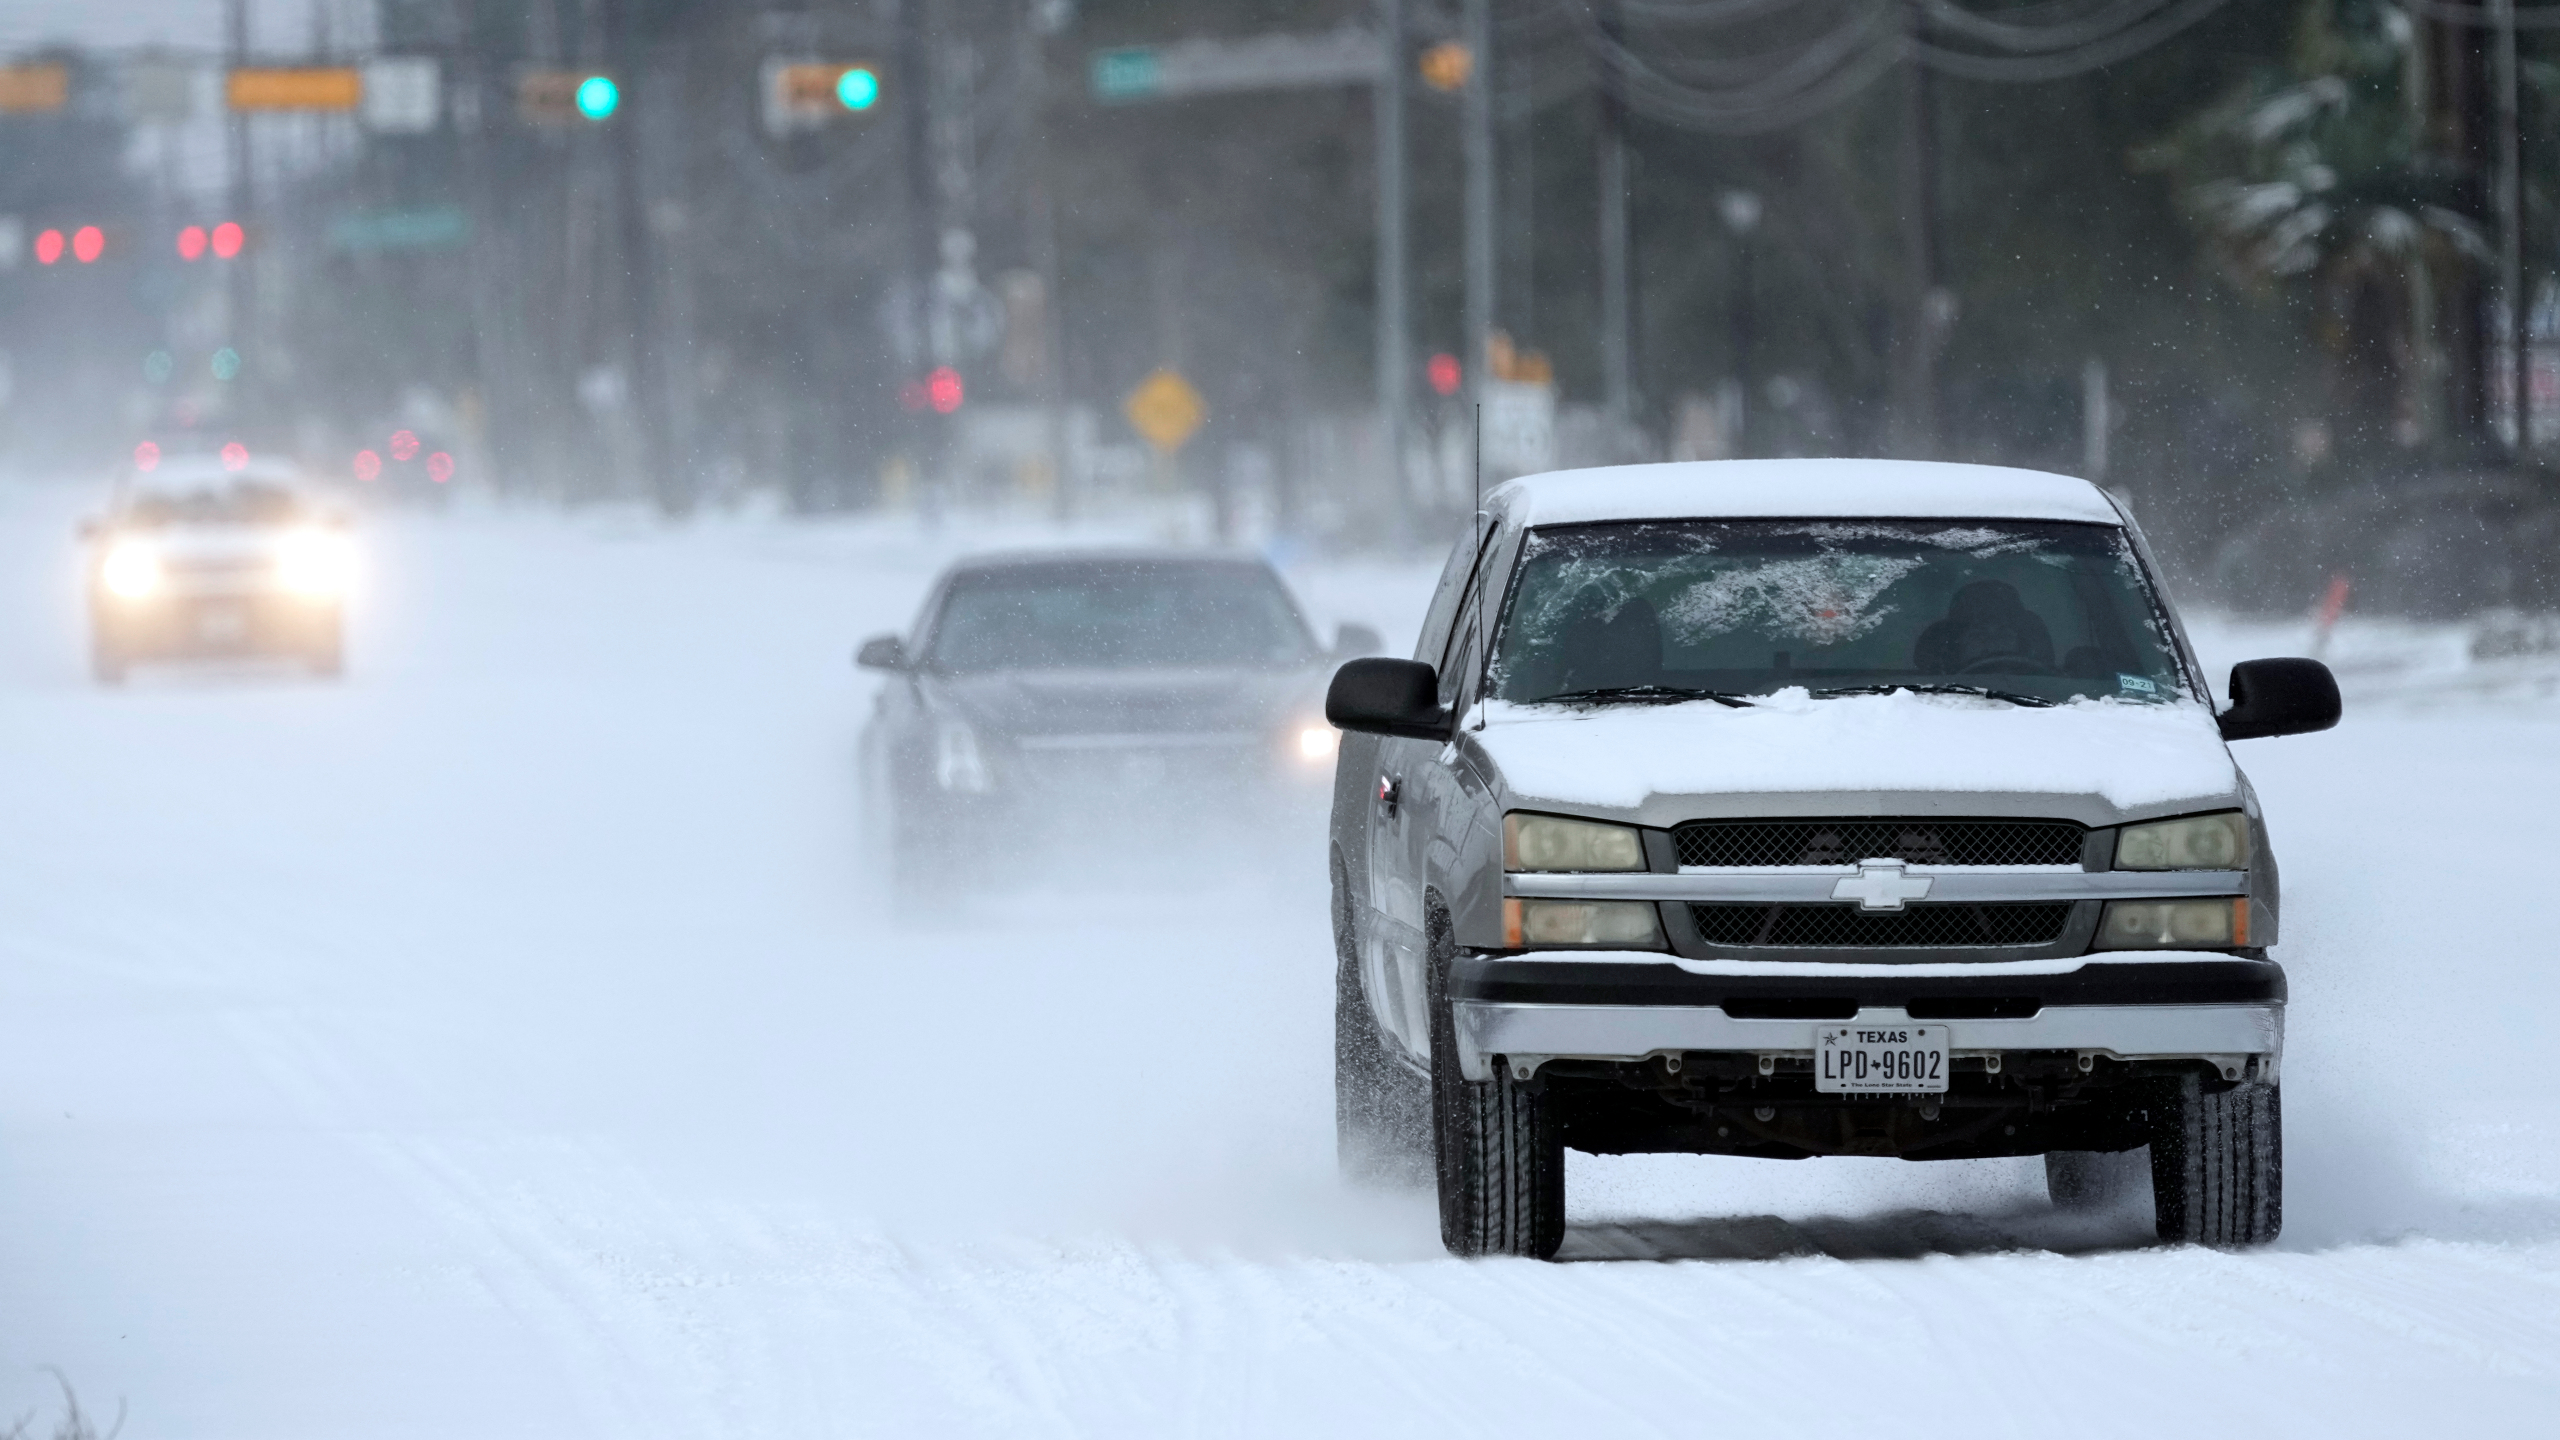 Blizzard Snowstorm kills at least 20 in US